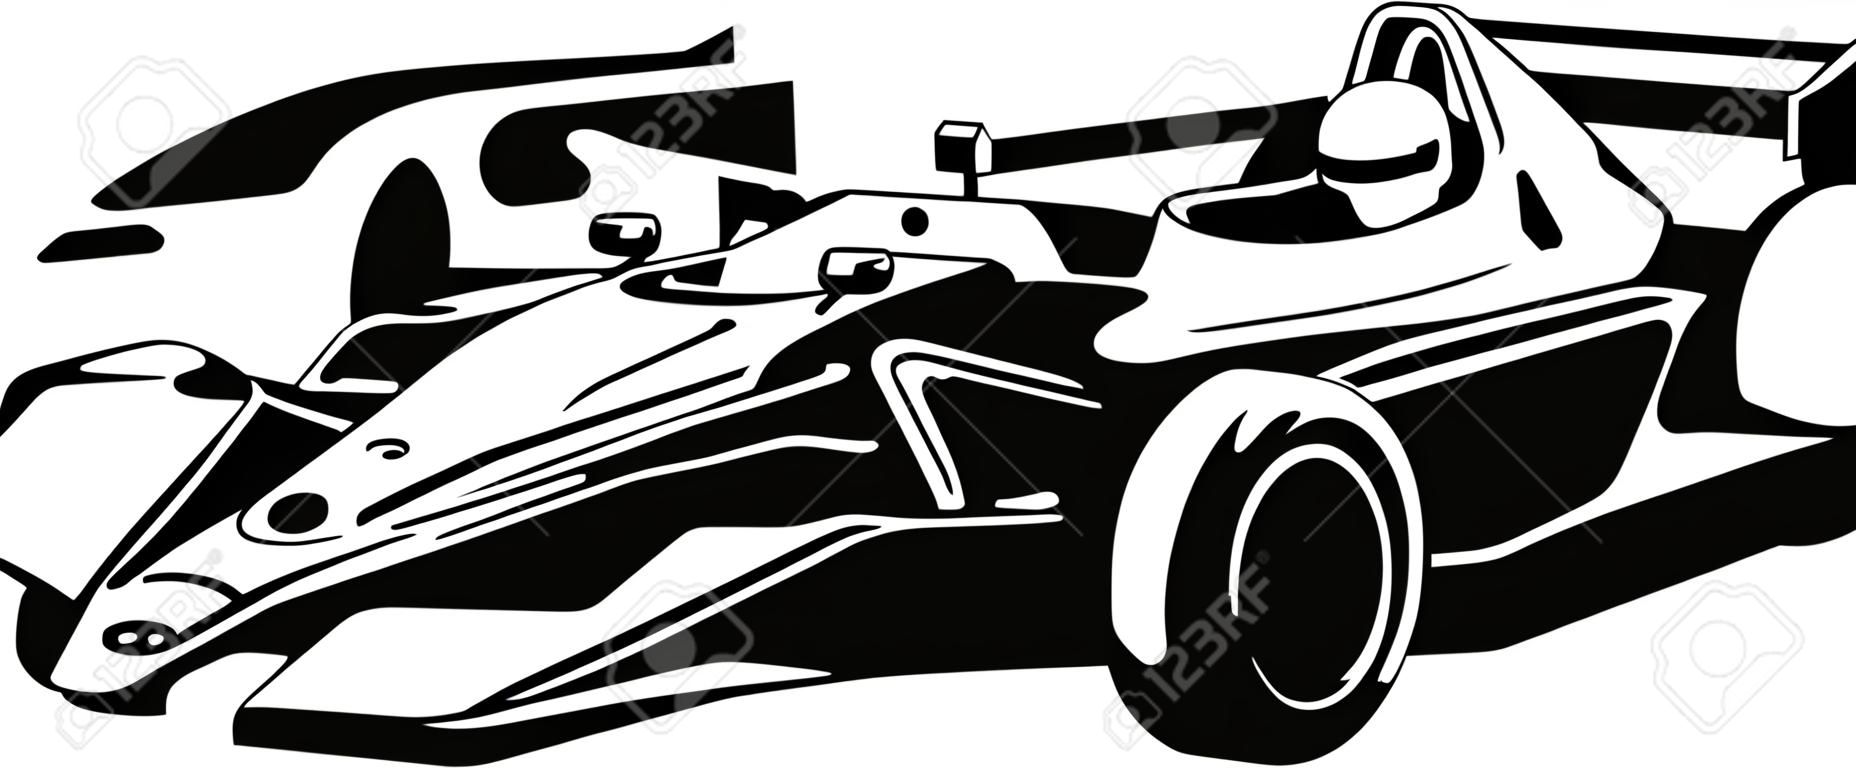 Racing Car - Black Outline Illustration, Vector